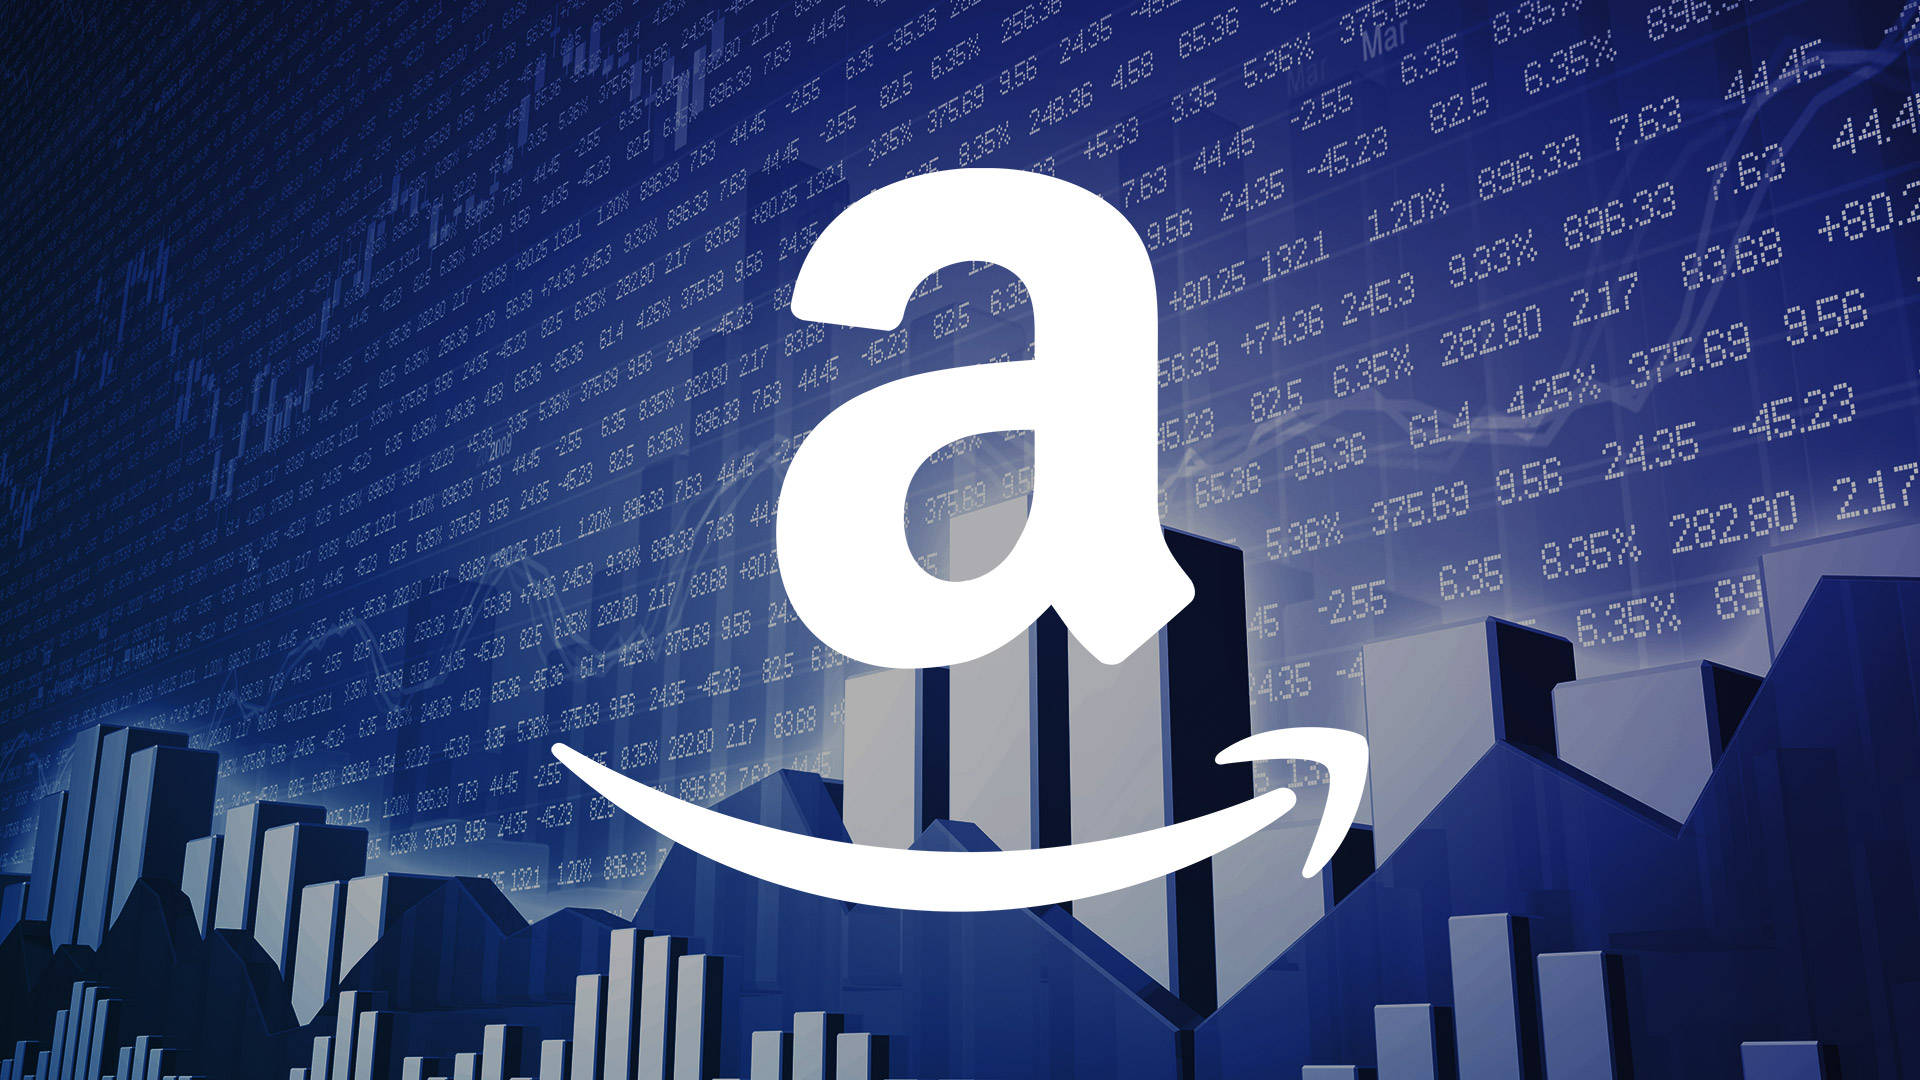 Amazon Stock Market Background